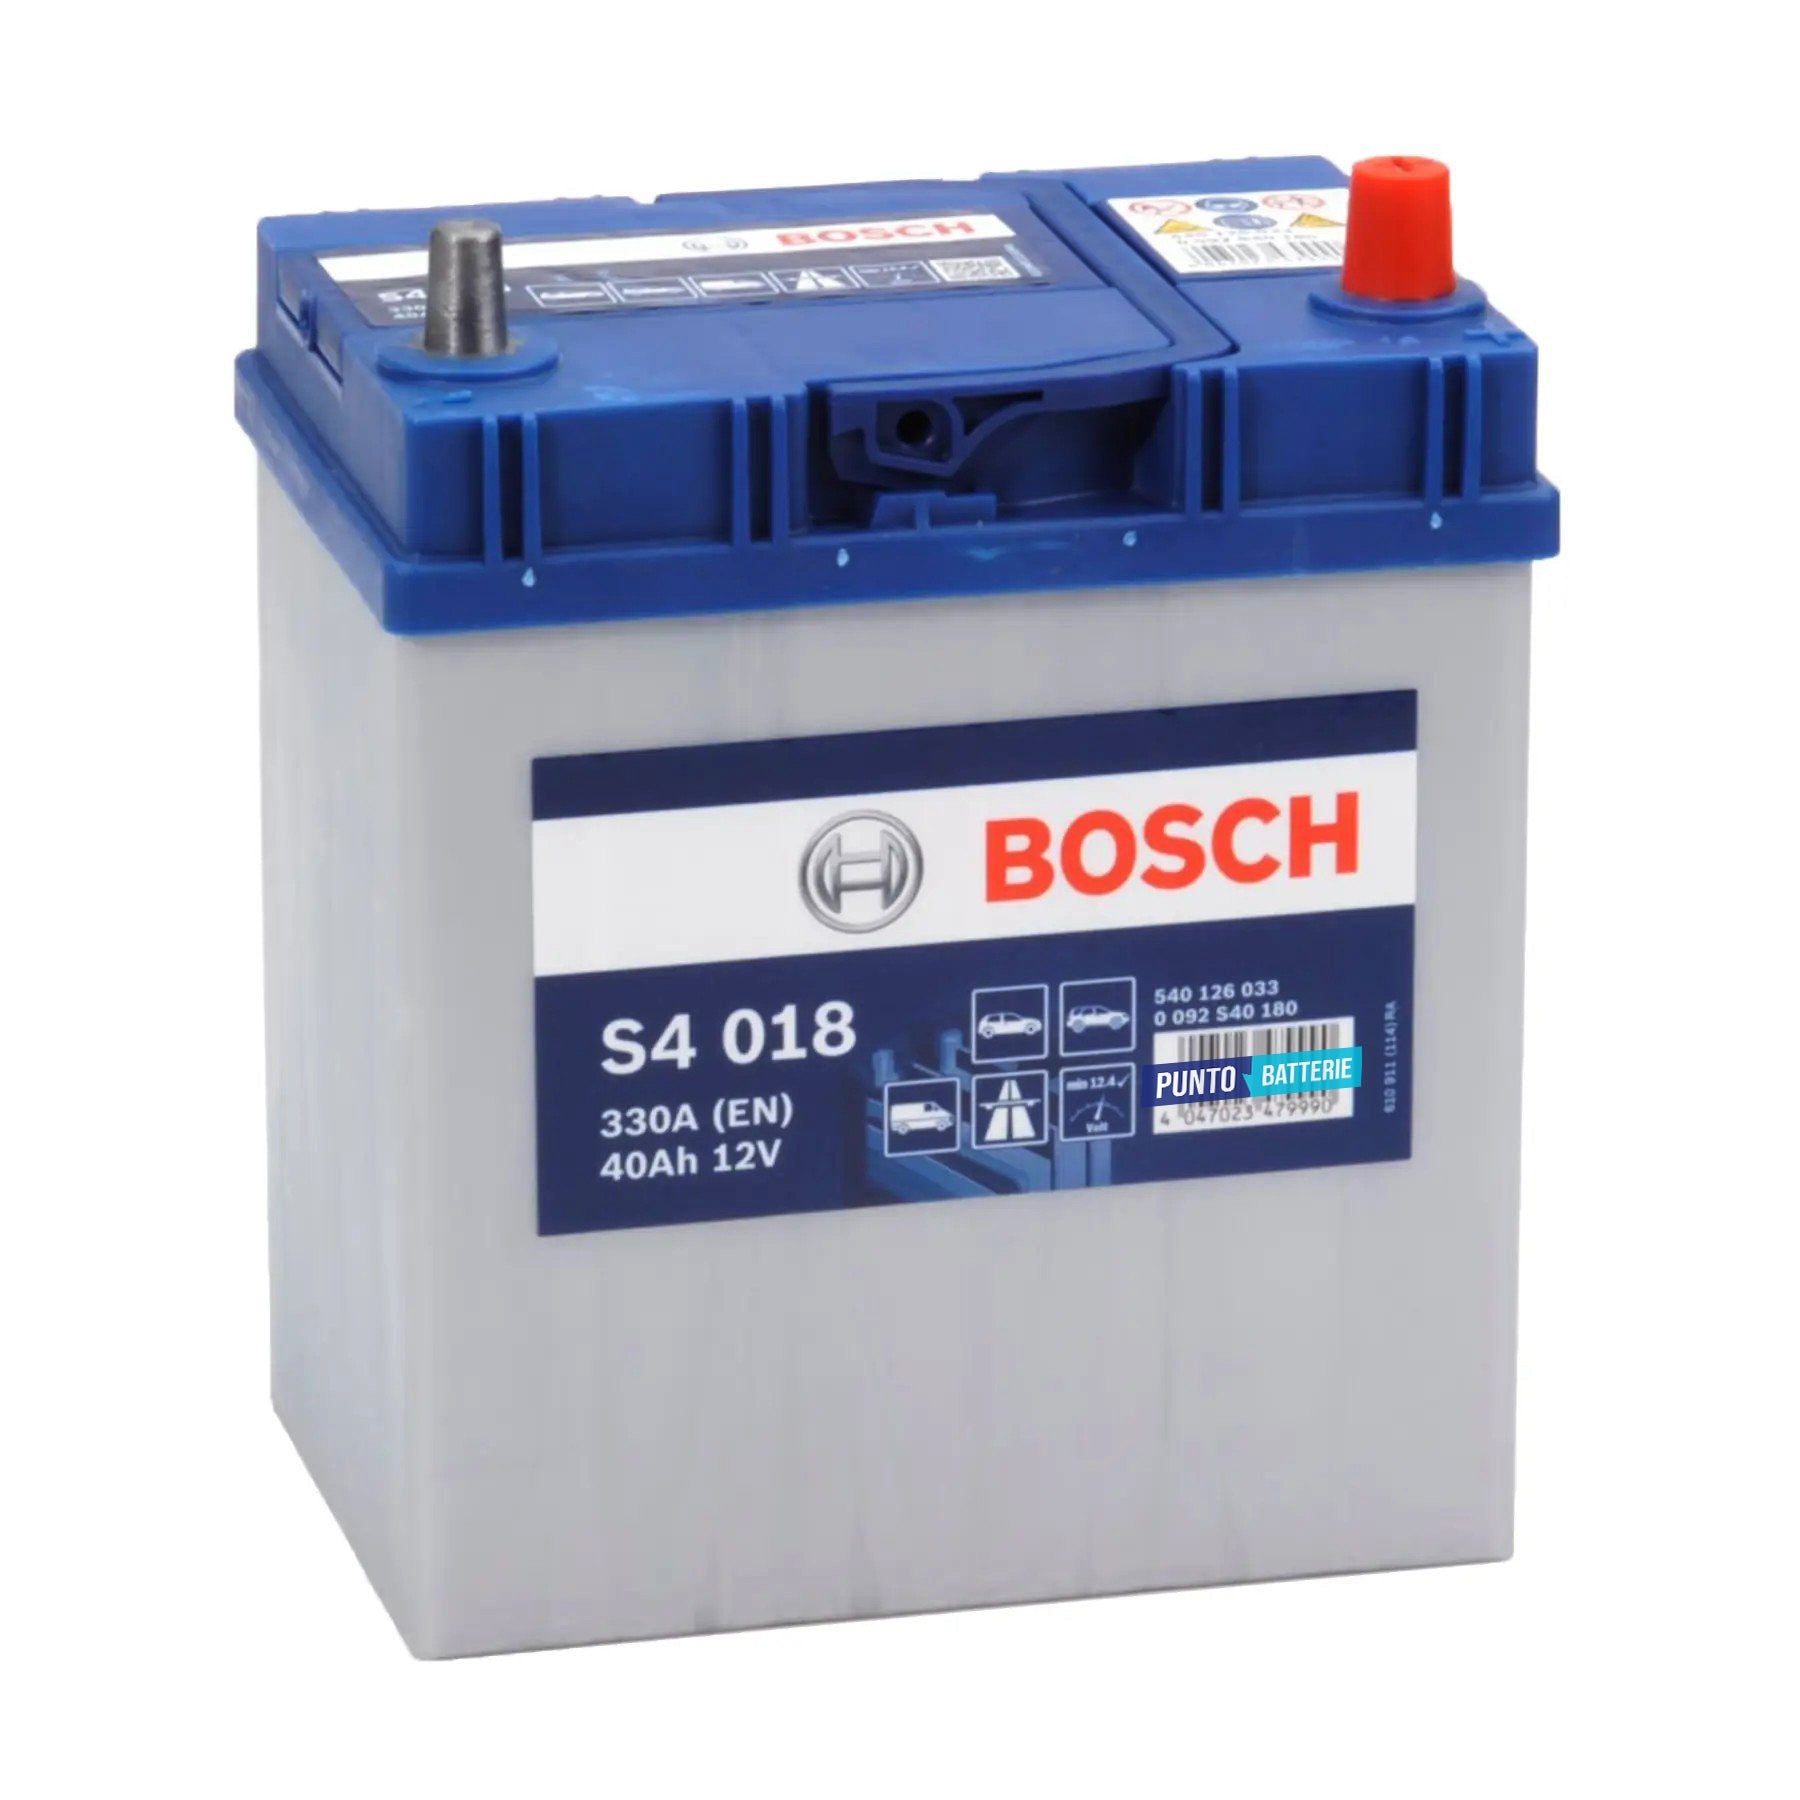 Batteria originale Bosch S4 S4 018, dimensioni 187 x 140 x 227, polo positivo a destra, 12 volt, 40 amperora, 330 ampere. Batteria per auto e veicoli leggeri.